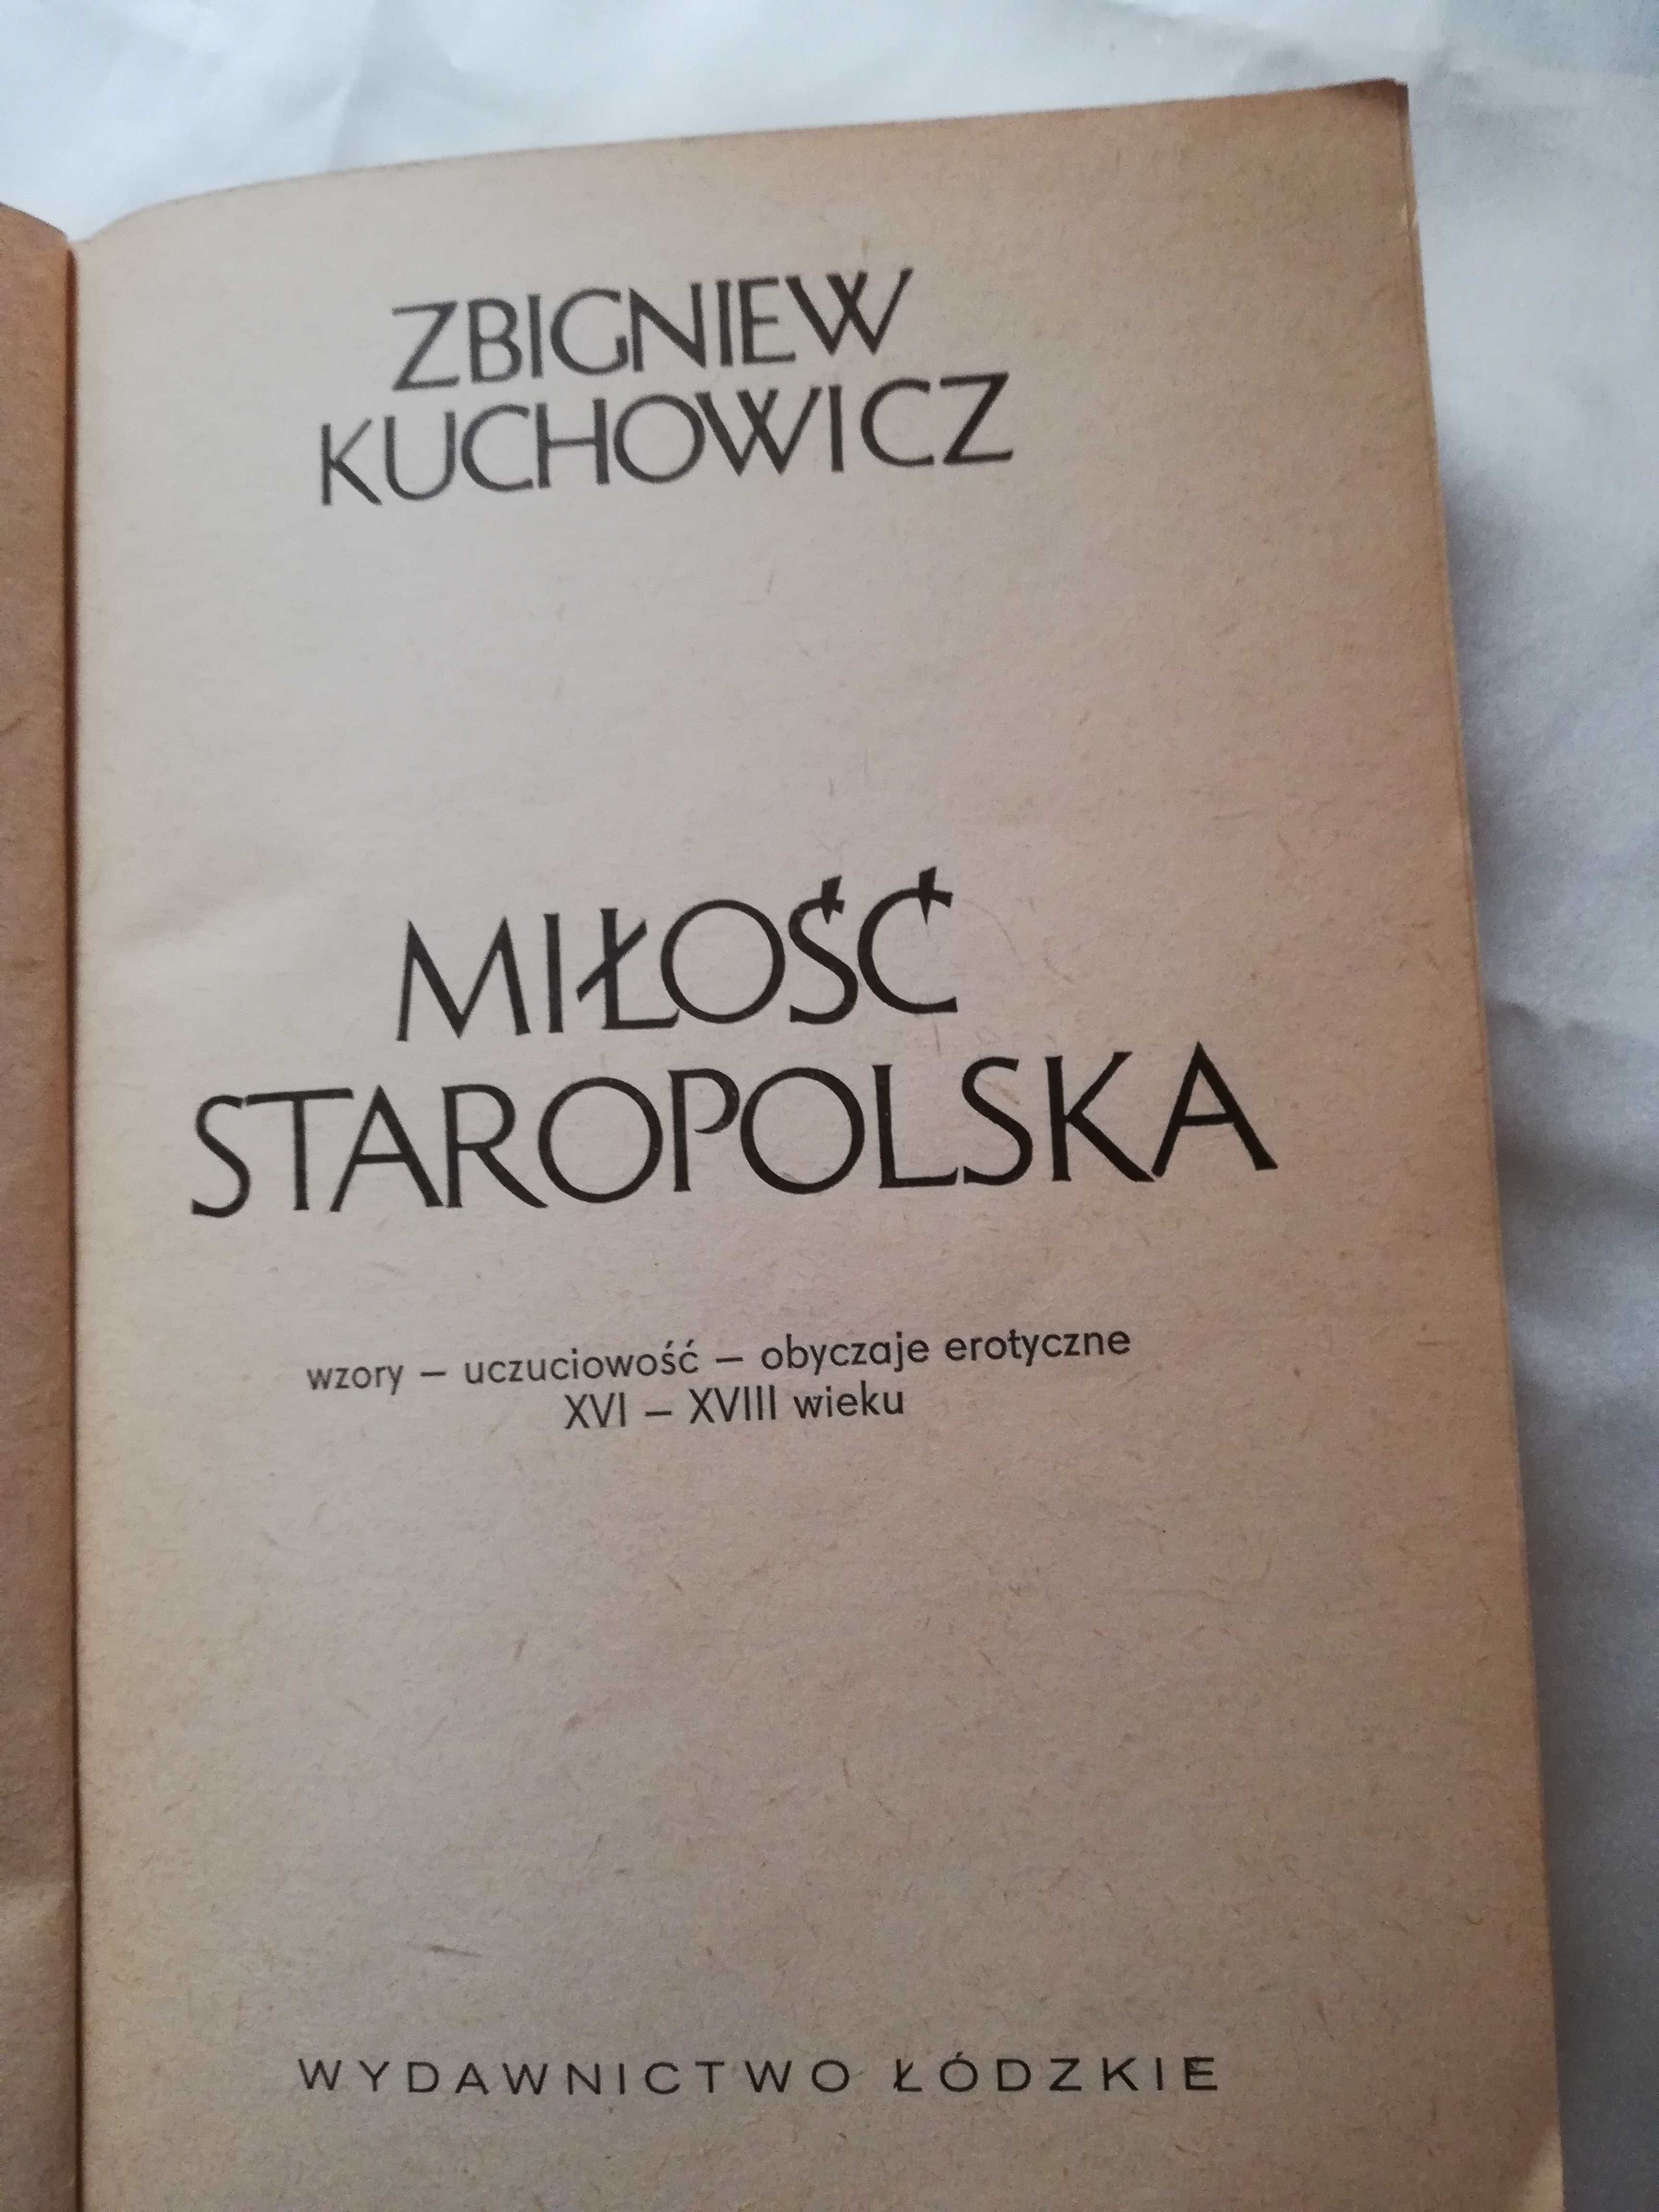 Miłosc Staropolska  Zbigniew Kuchowicz